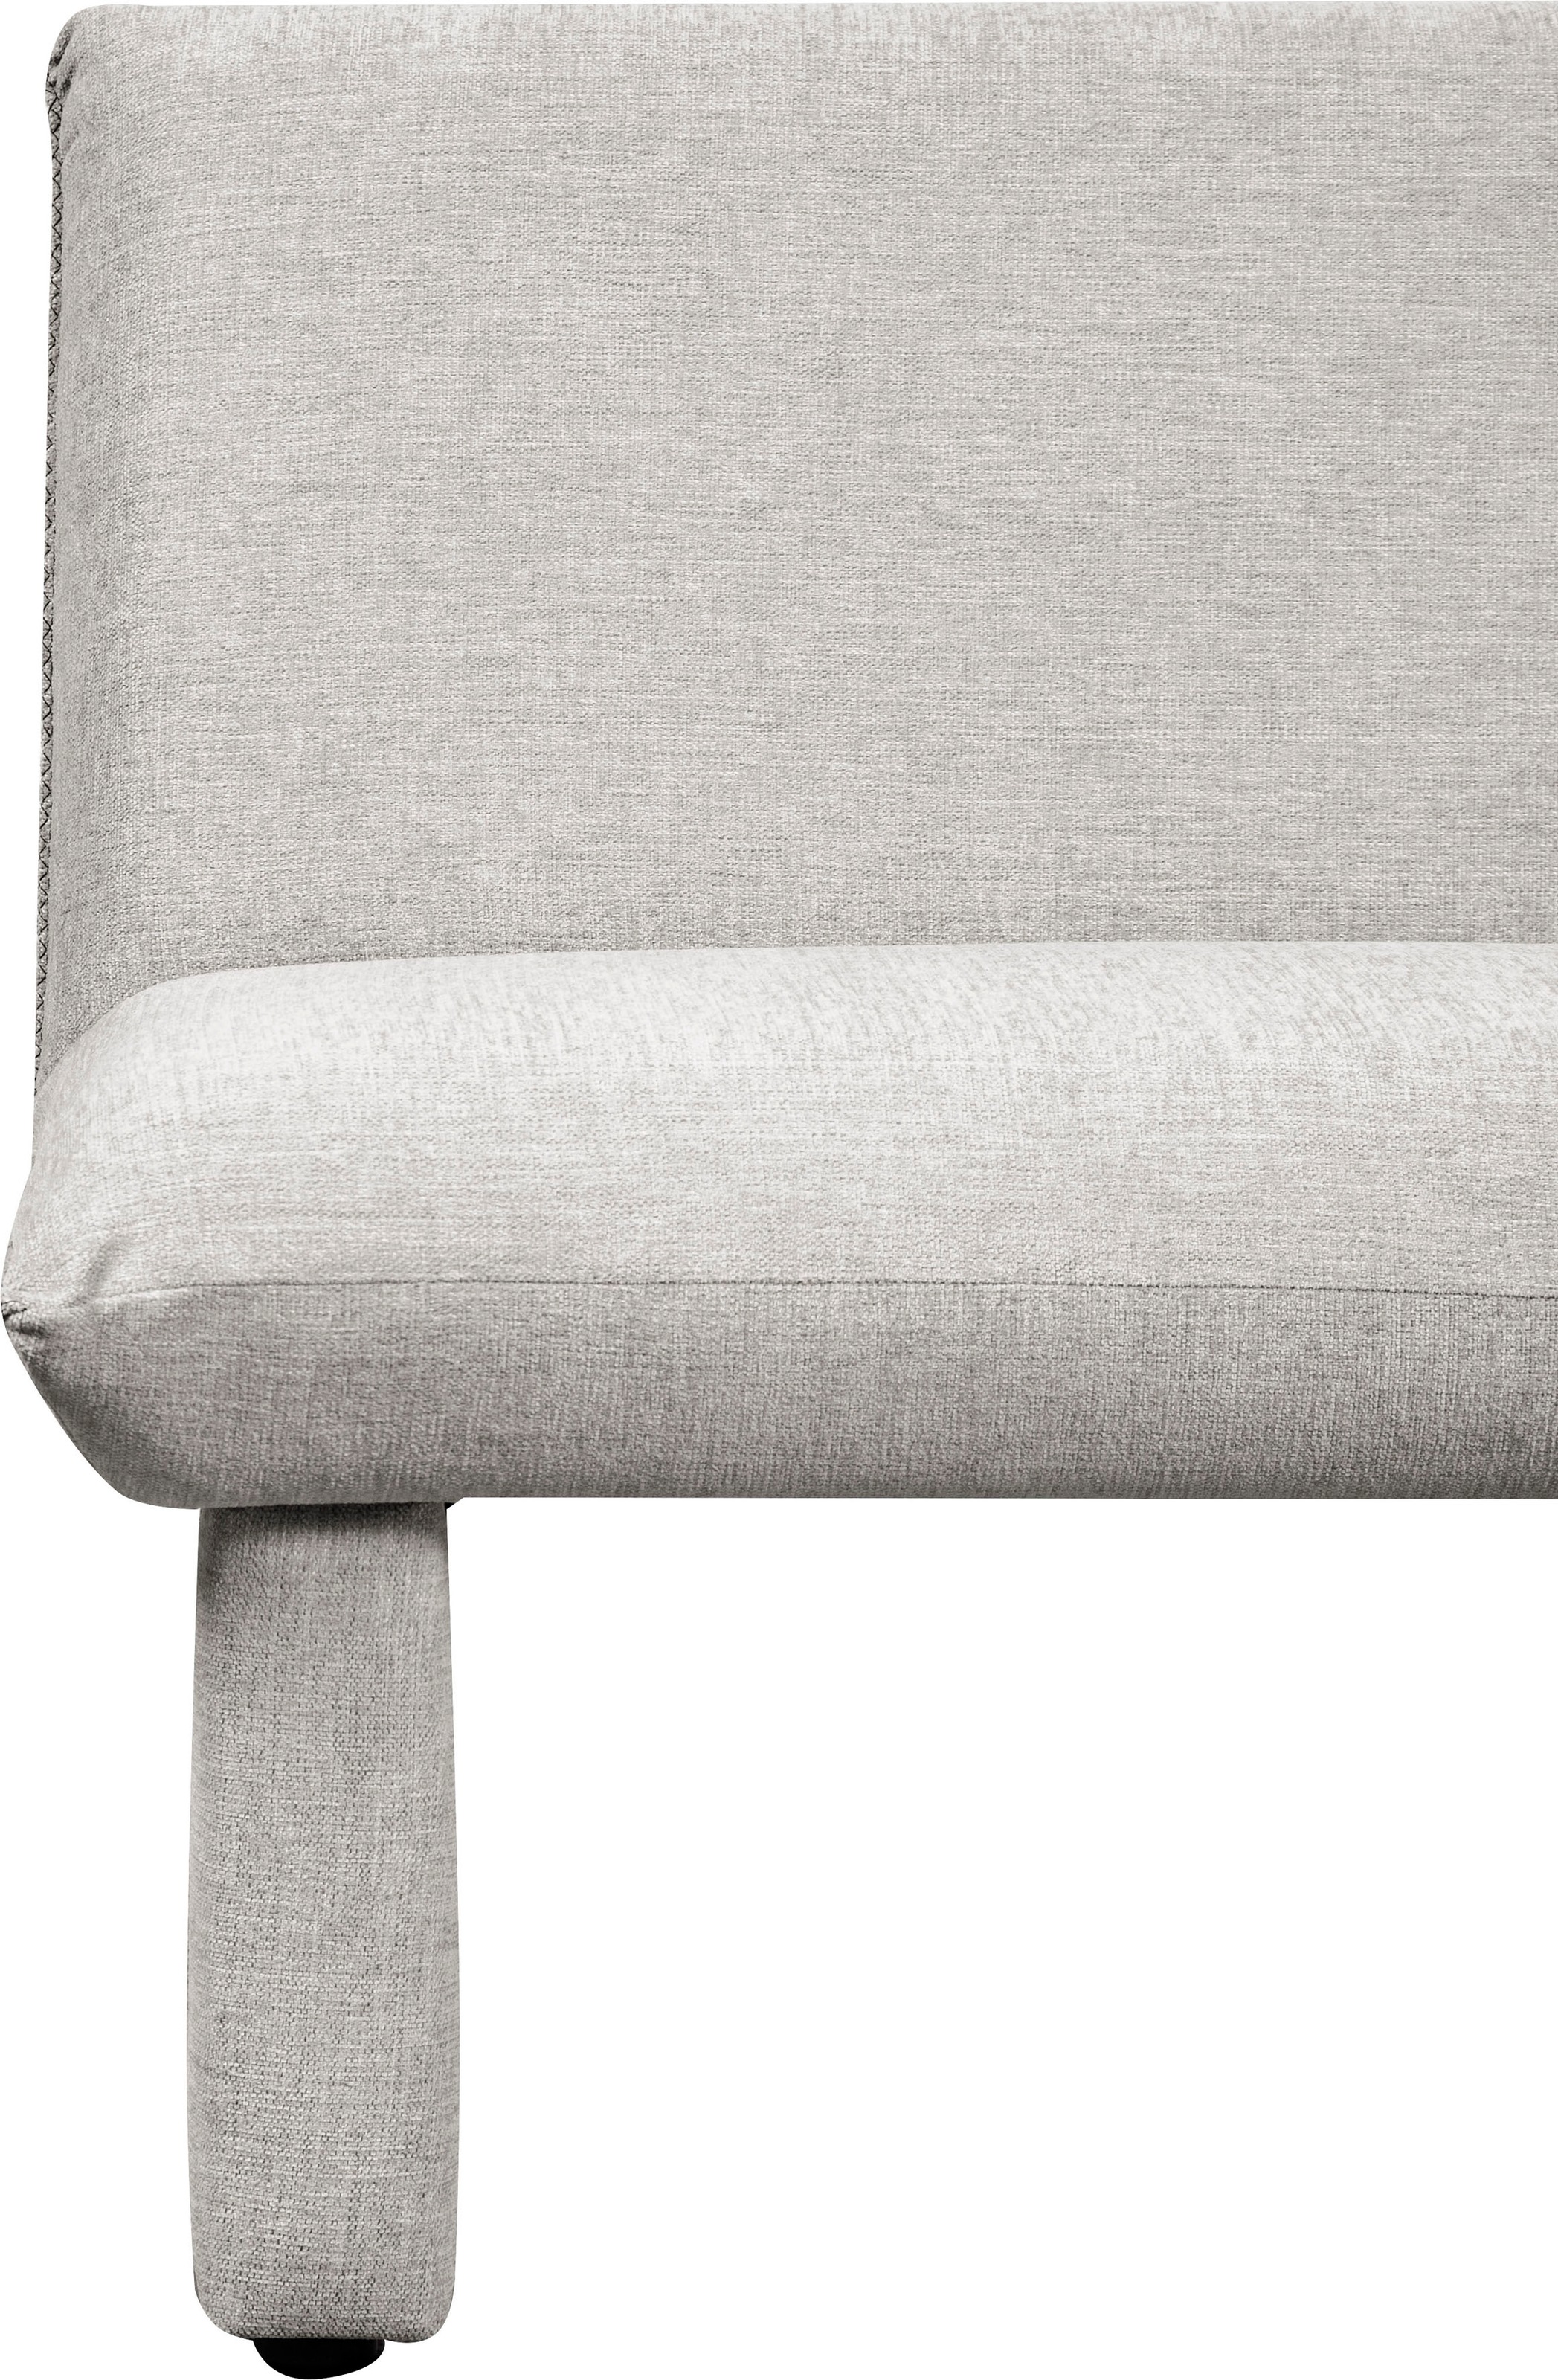 Home affaire Sitzbank »London«, Breite 169 cm, mit Wellenunterfederung im Sitz